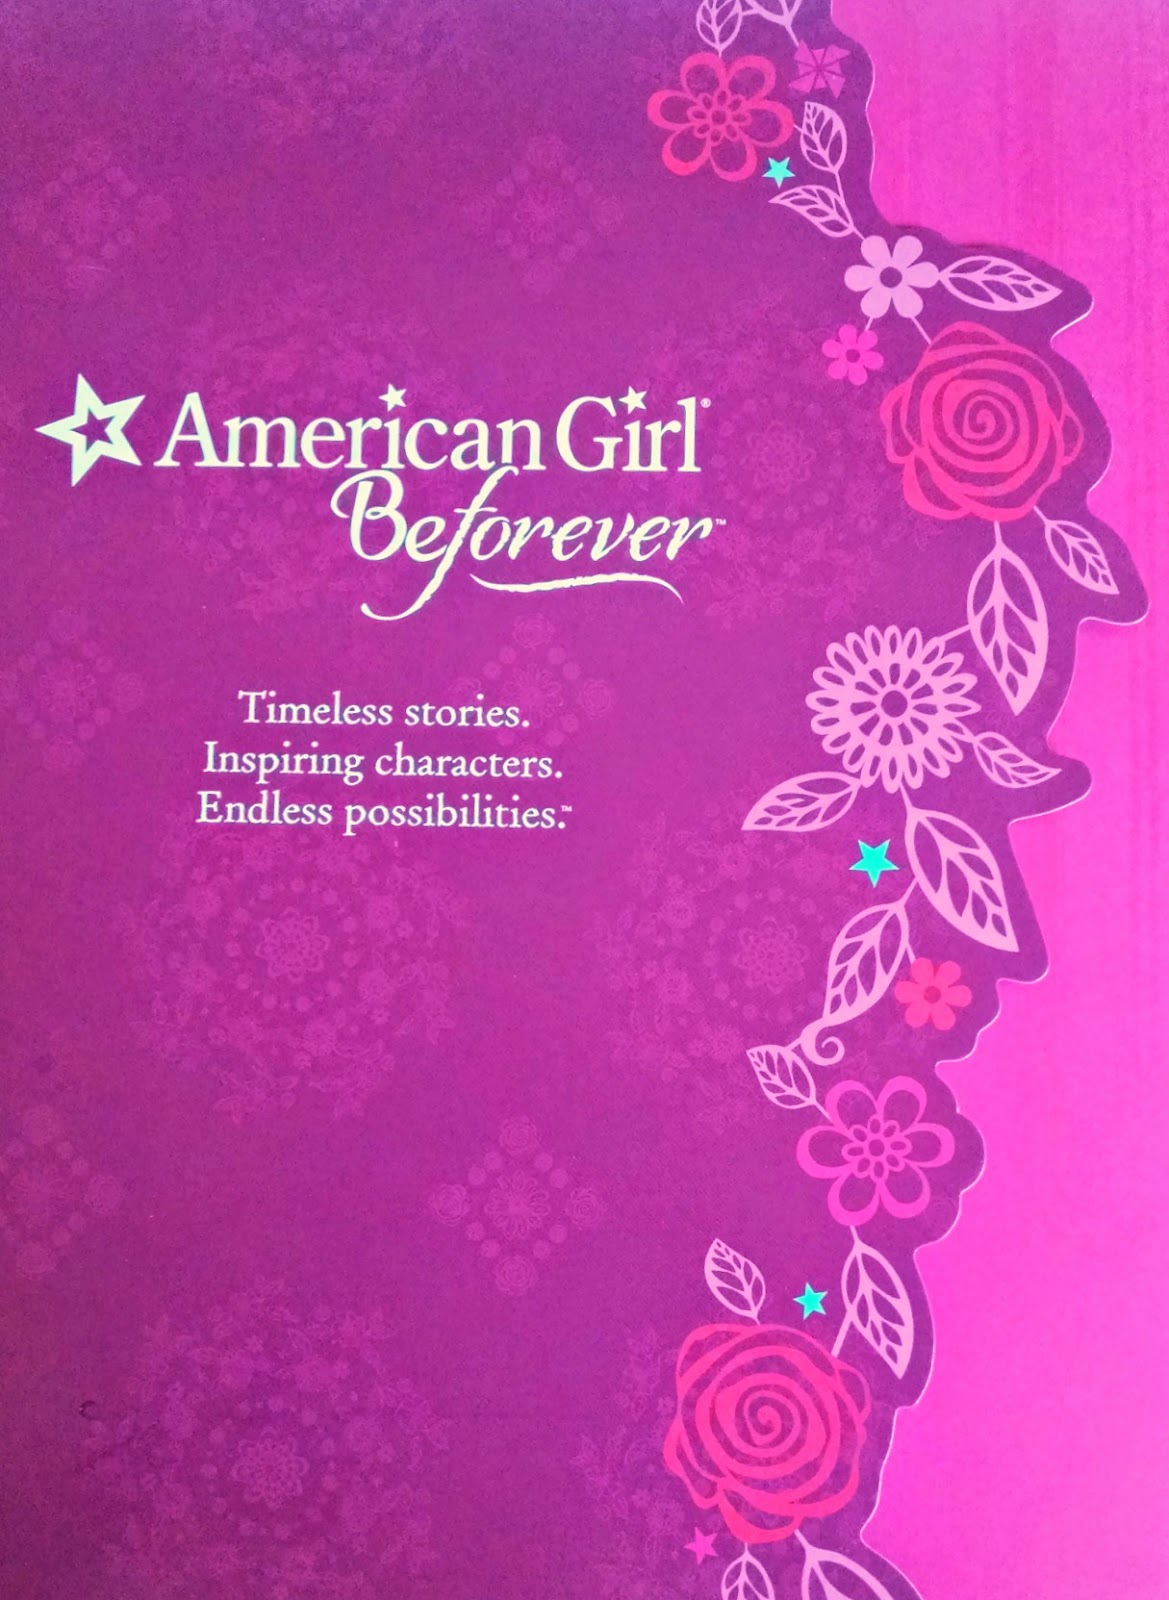 American Girl BeForever